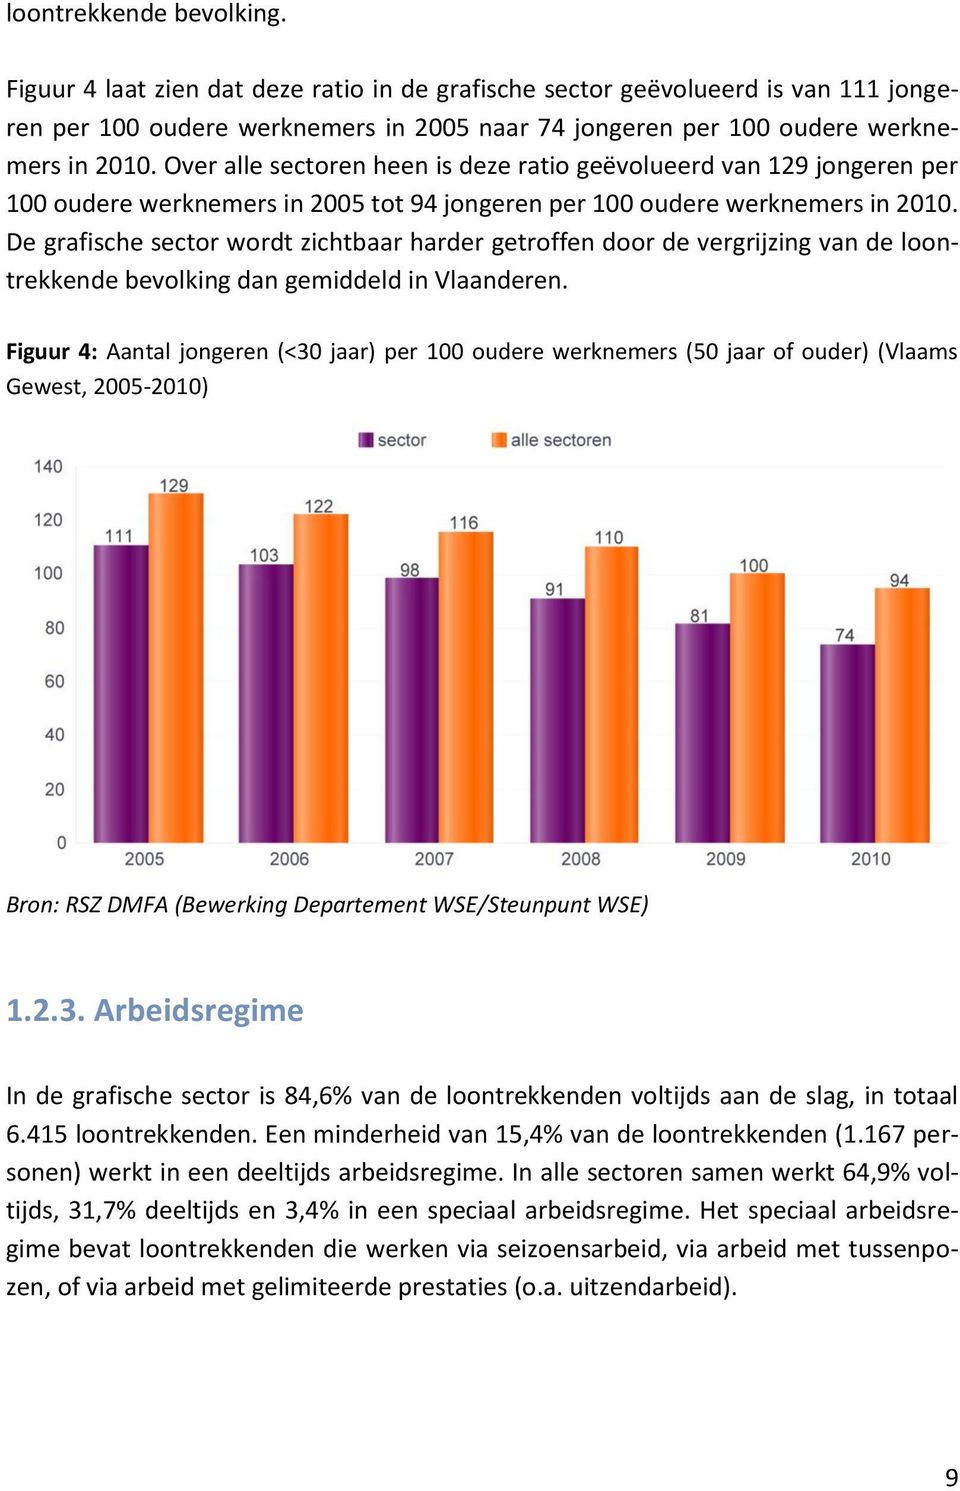 De grafische sector wordt zichtbaar harder getroffen door de vergrijzing van de loontrekkende bevolking dan gemiddeld in Vlaanderen.